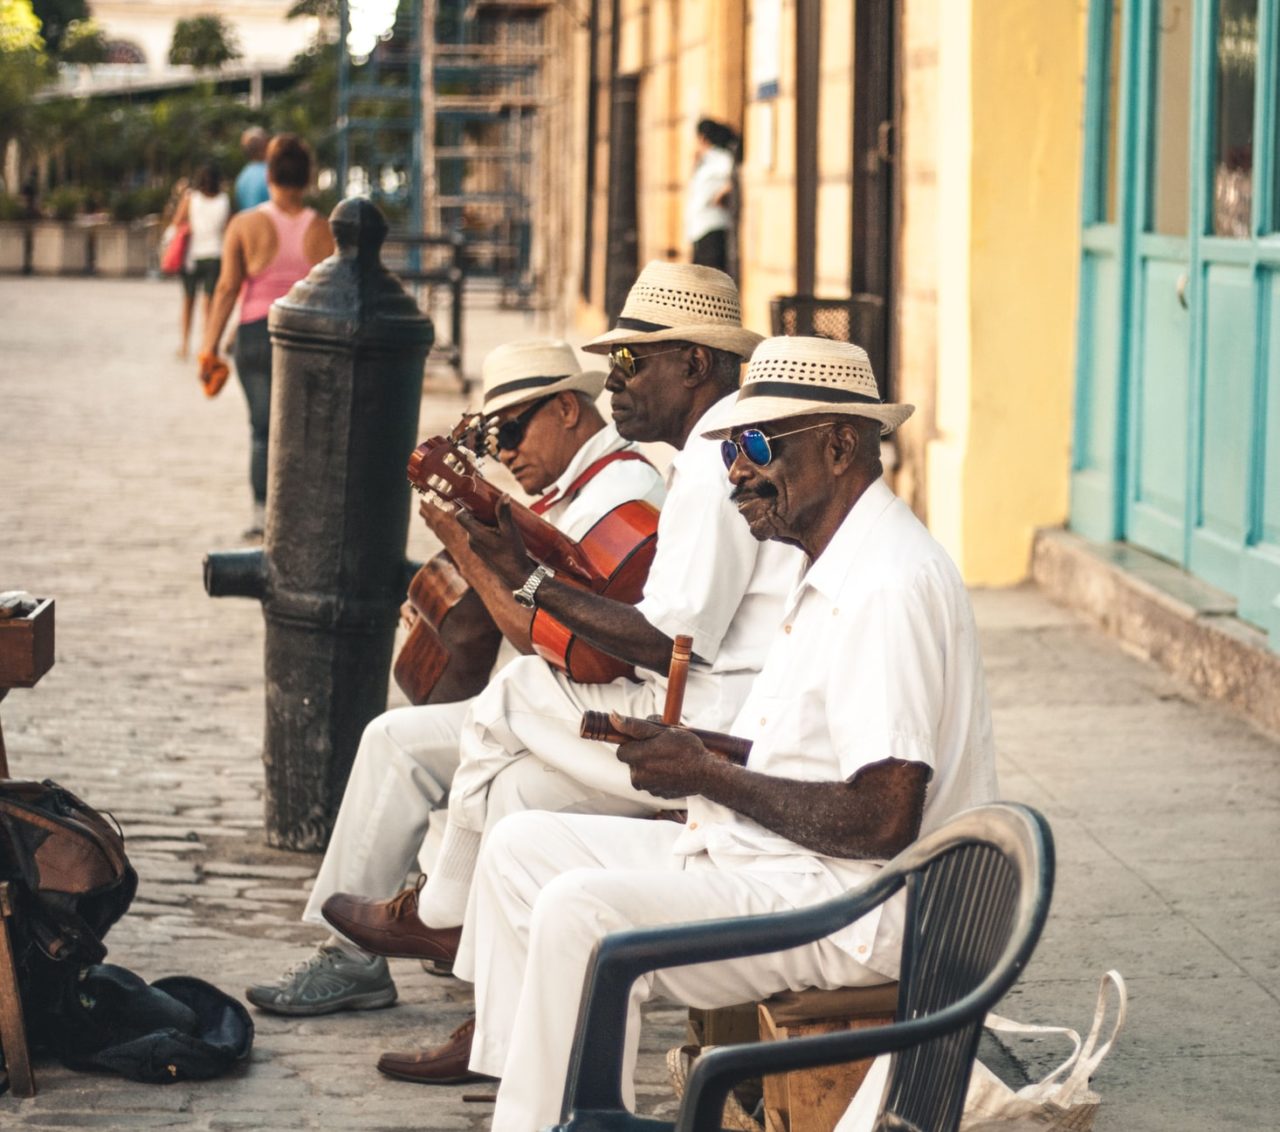 cuban men on street playing music